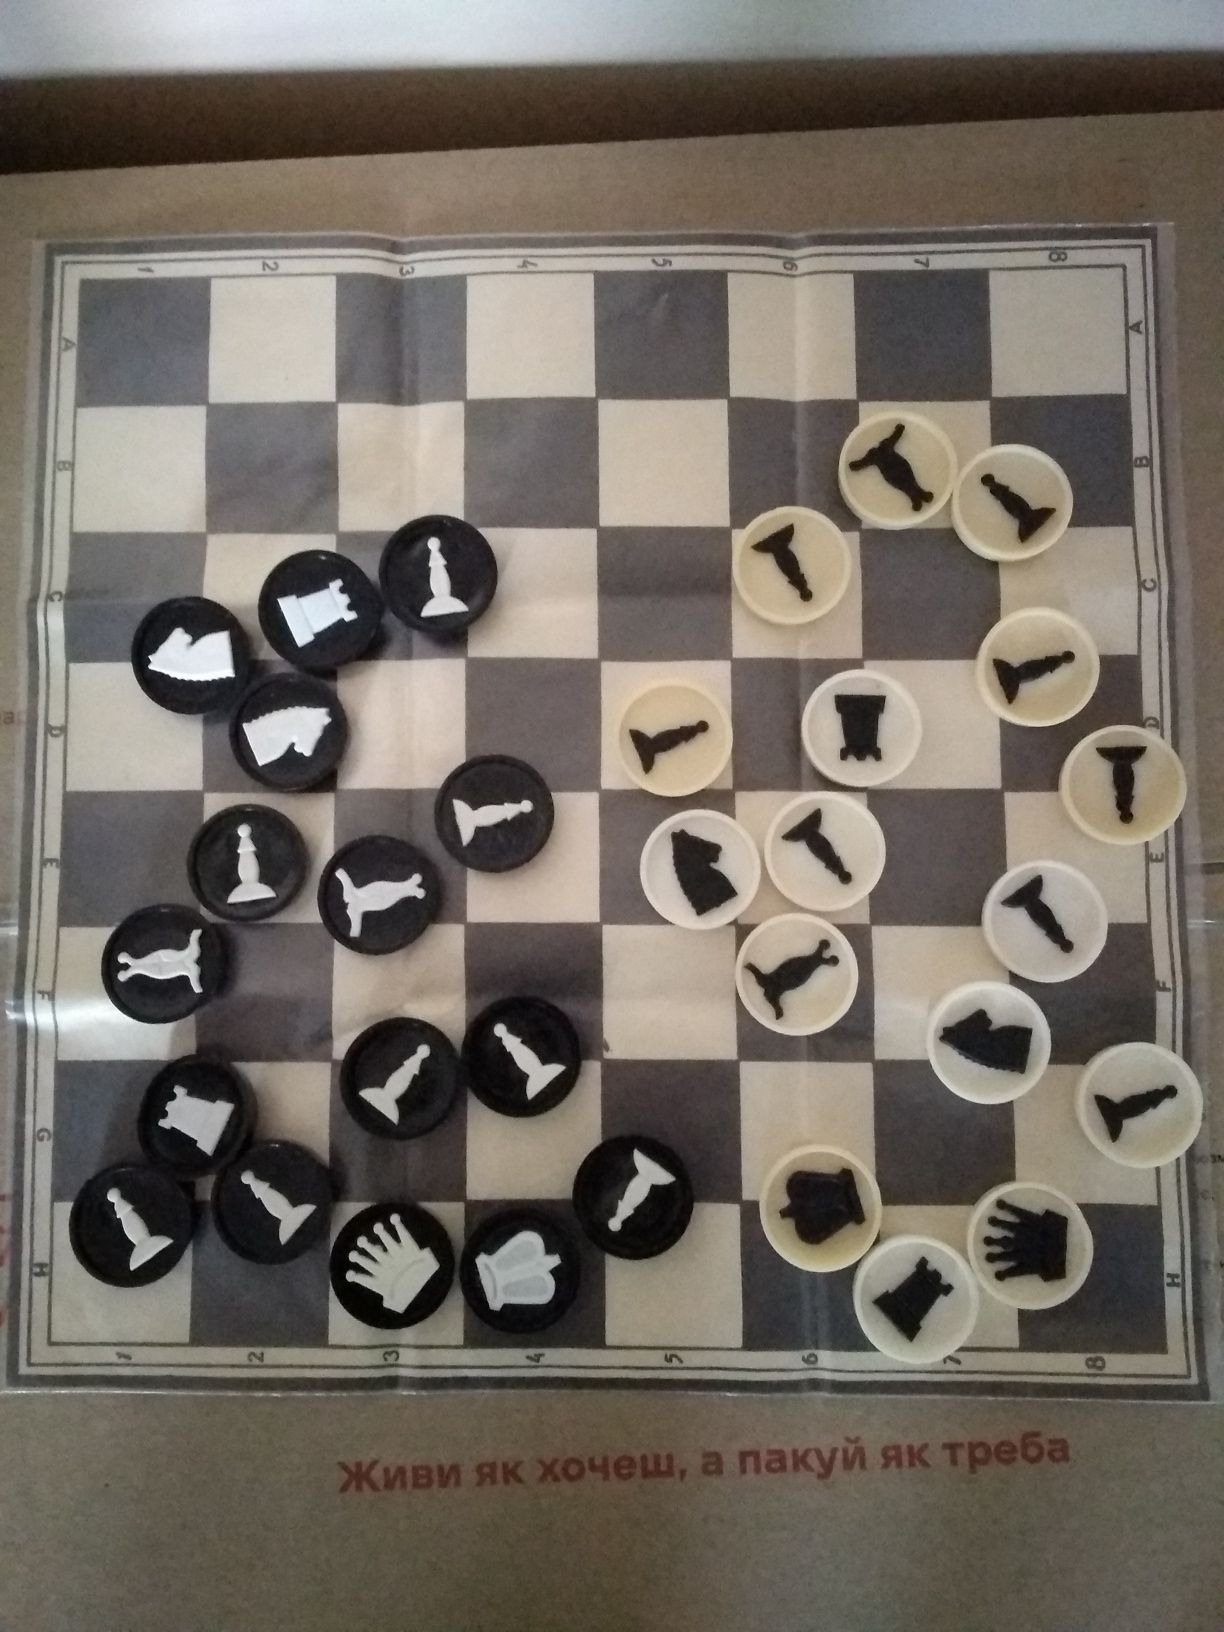 Шахматы шашки ссср